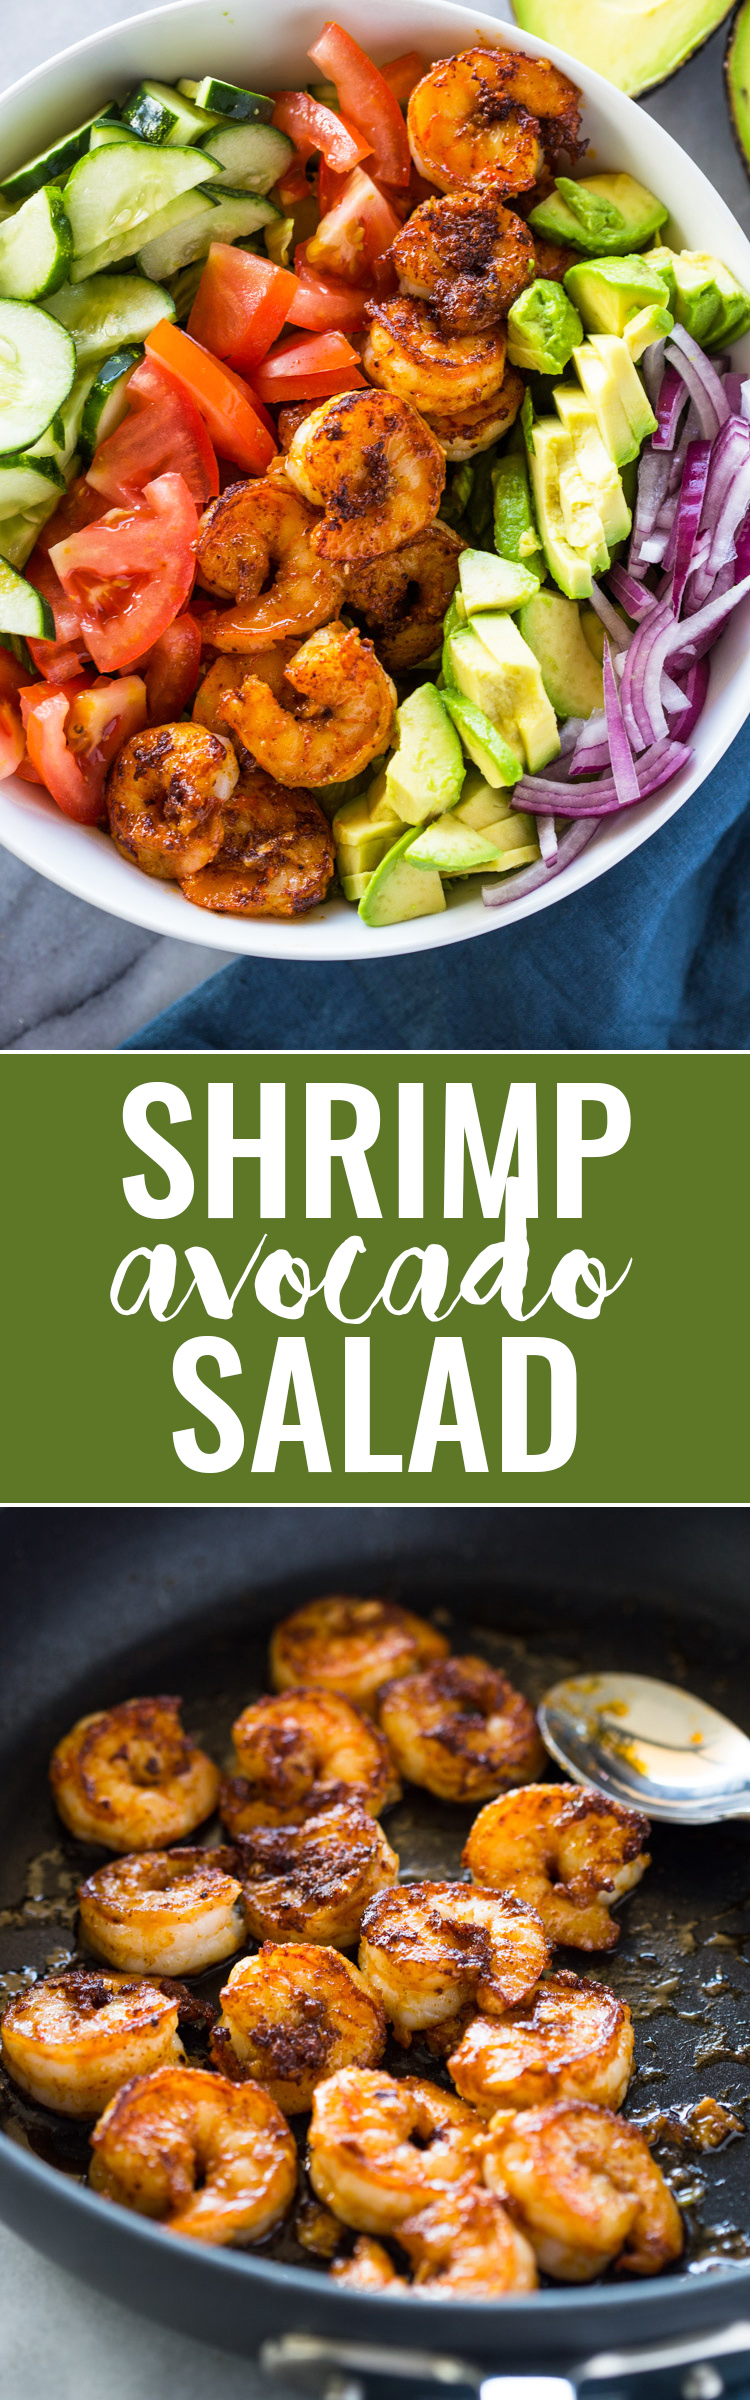 Skinny Shrimp & Avocado Salad with Cilantro Lime Dressing